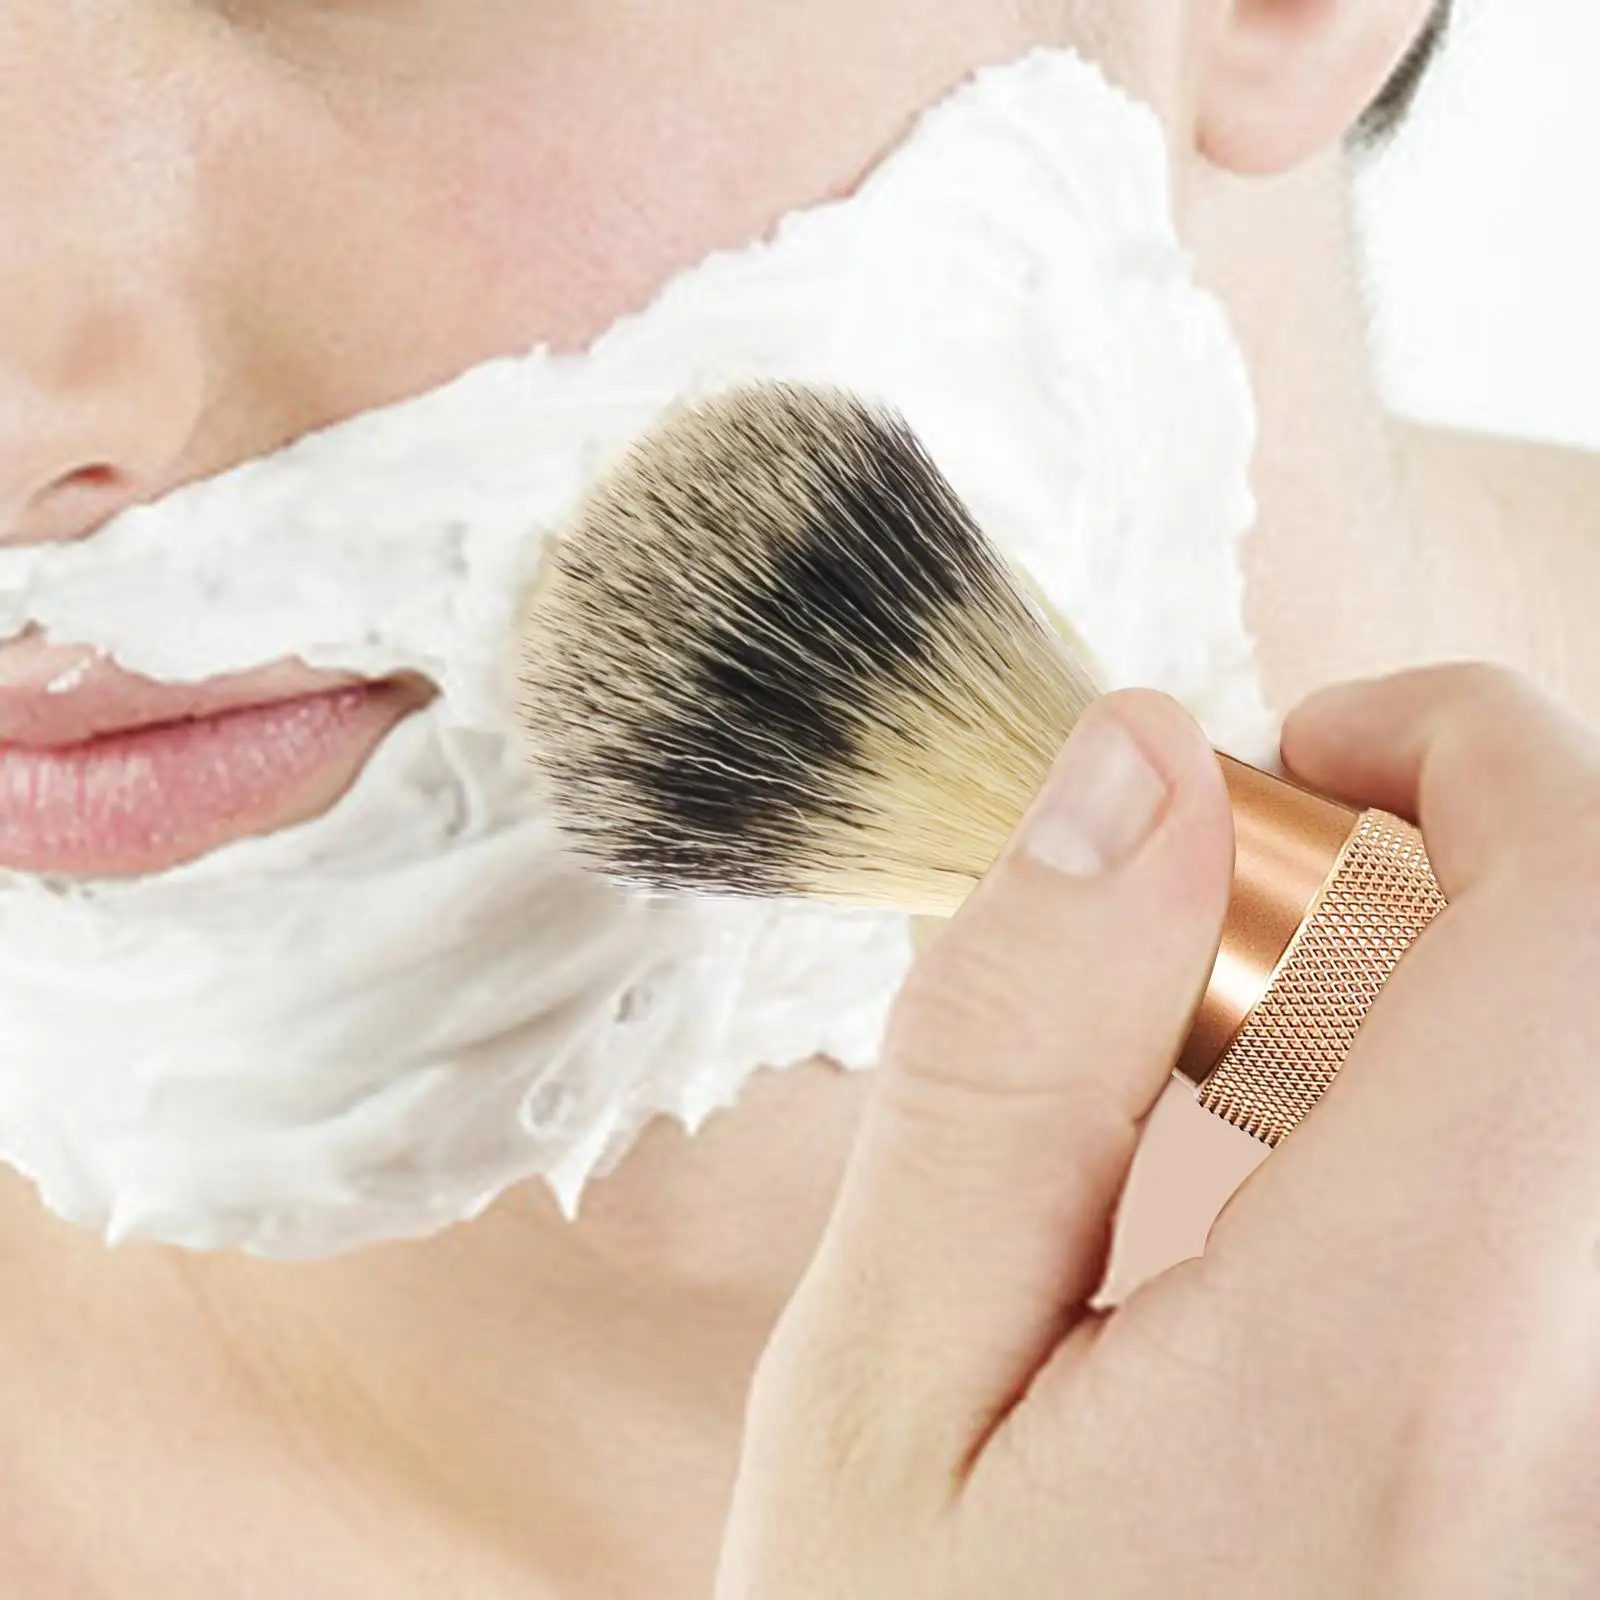 Shaving Brush for Men Shaving Accessory for Wet Shave Handled Professional Height 11cm Beard Brush Tool Face Hair Cleaning